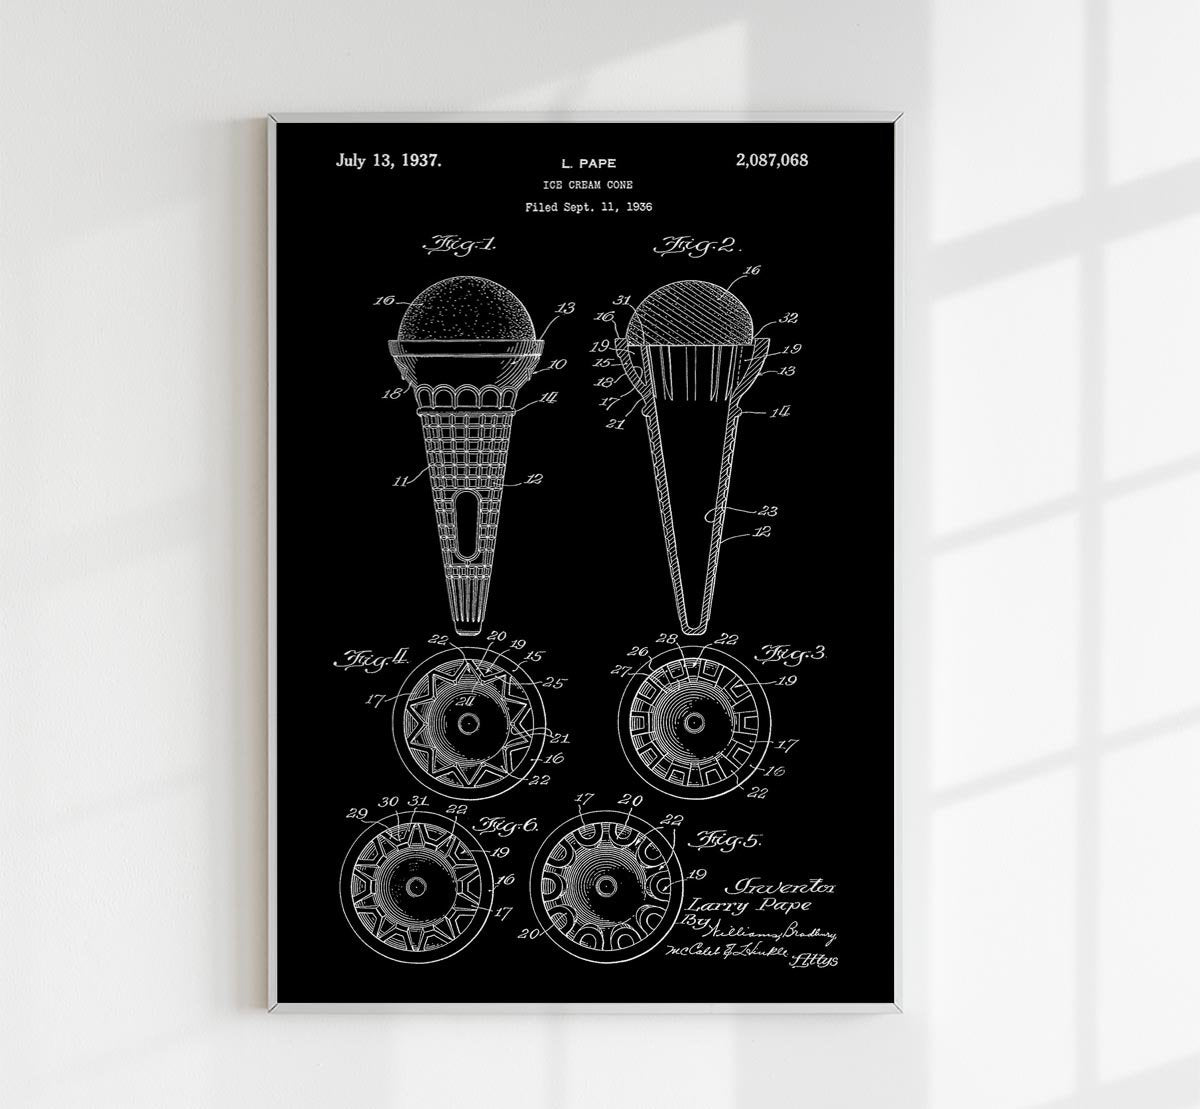 Ice Cream Cone Patent Poster